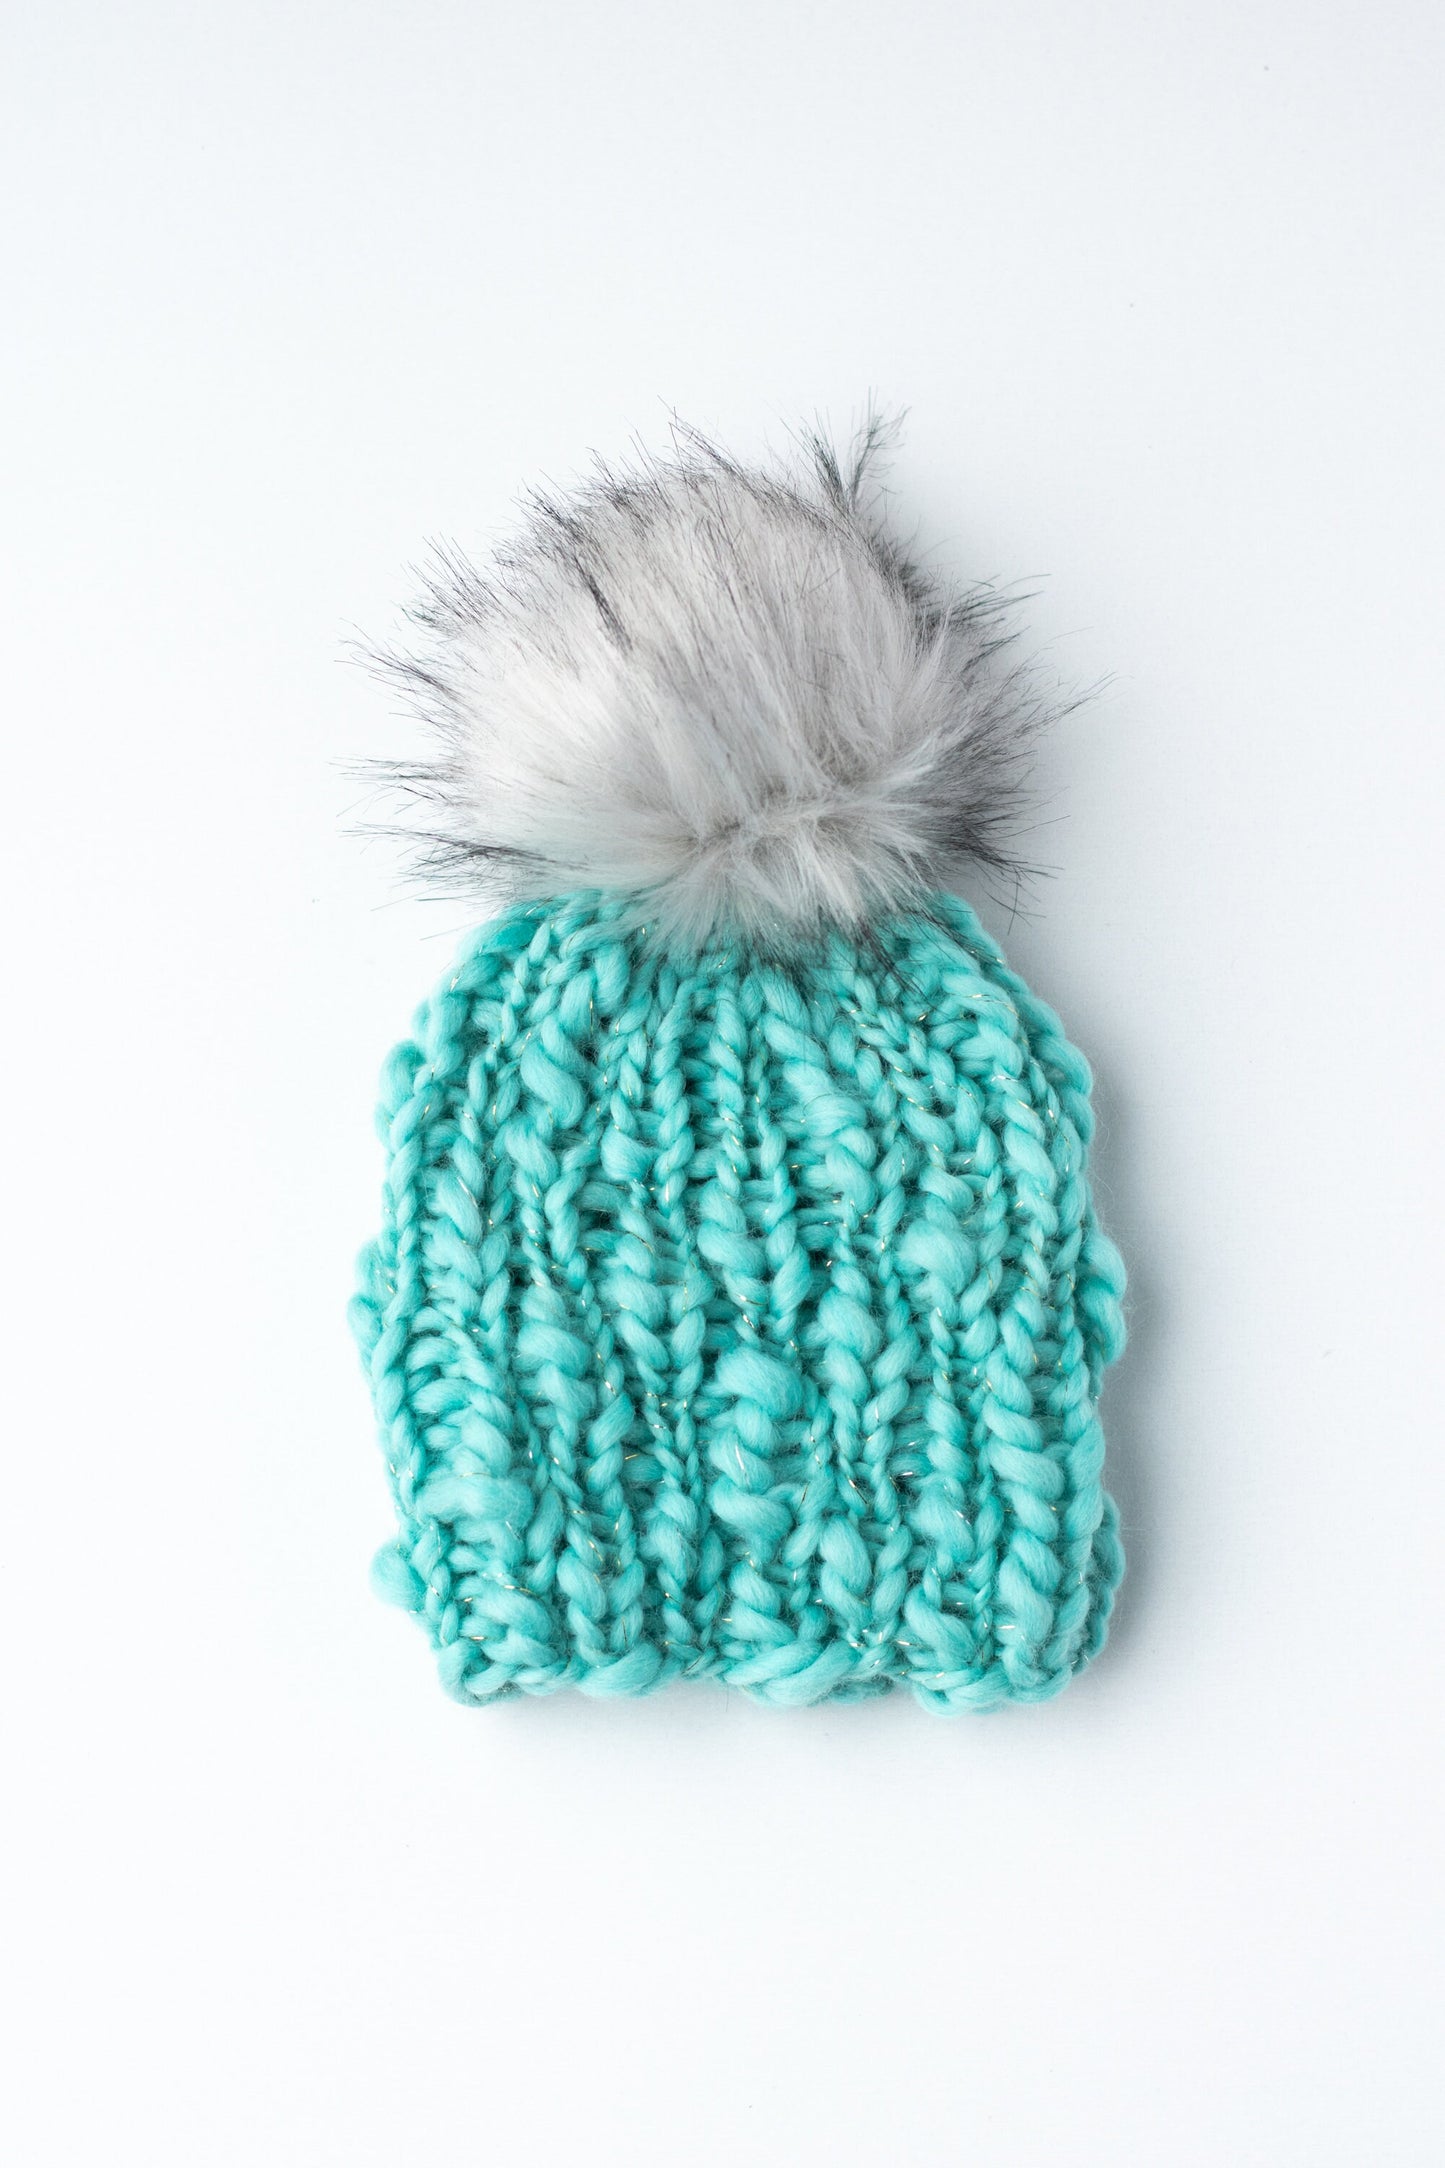 Toddler Teal Hand Knit Handspun Wool Hat | Toddler Chunky Knit Hat | Turquoise Toddler Winter Knit Hat | Boho Chic Toddler Winter Hat